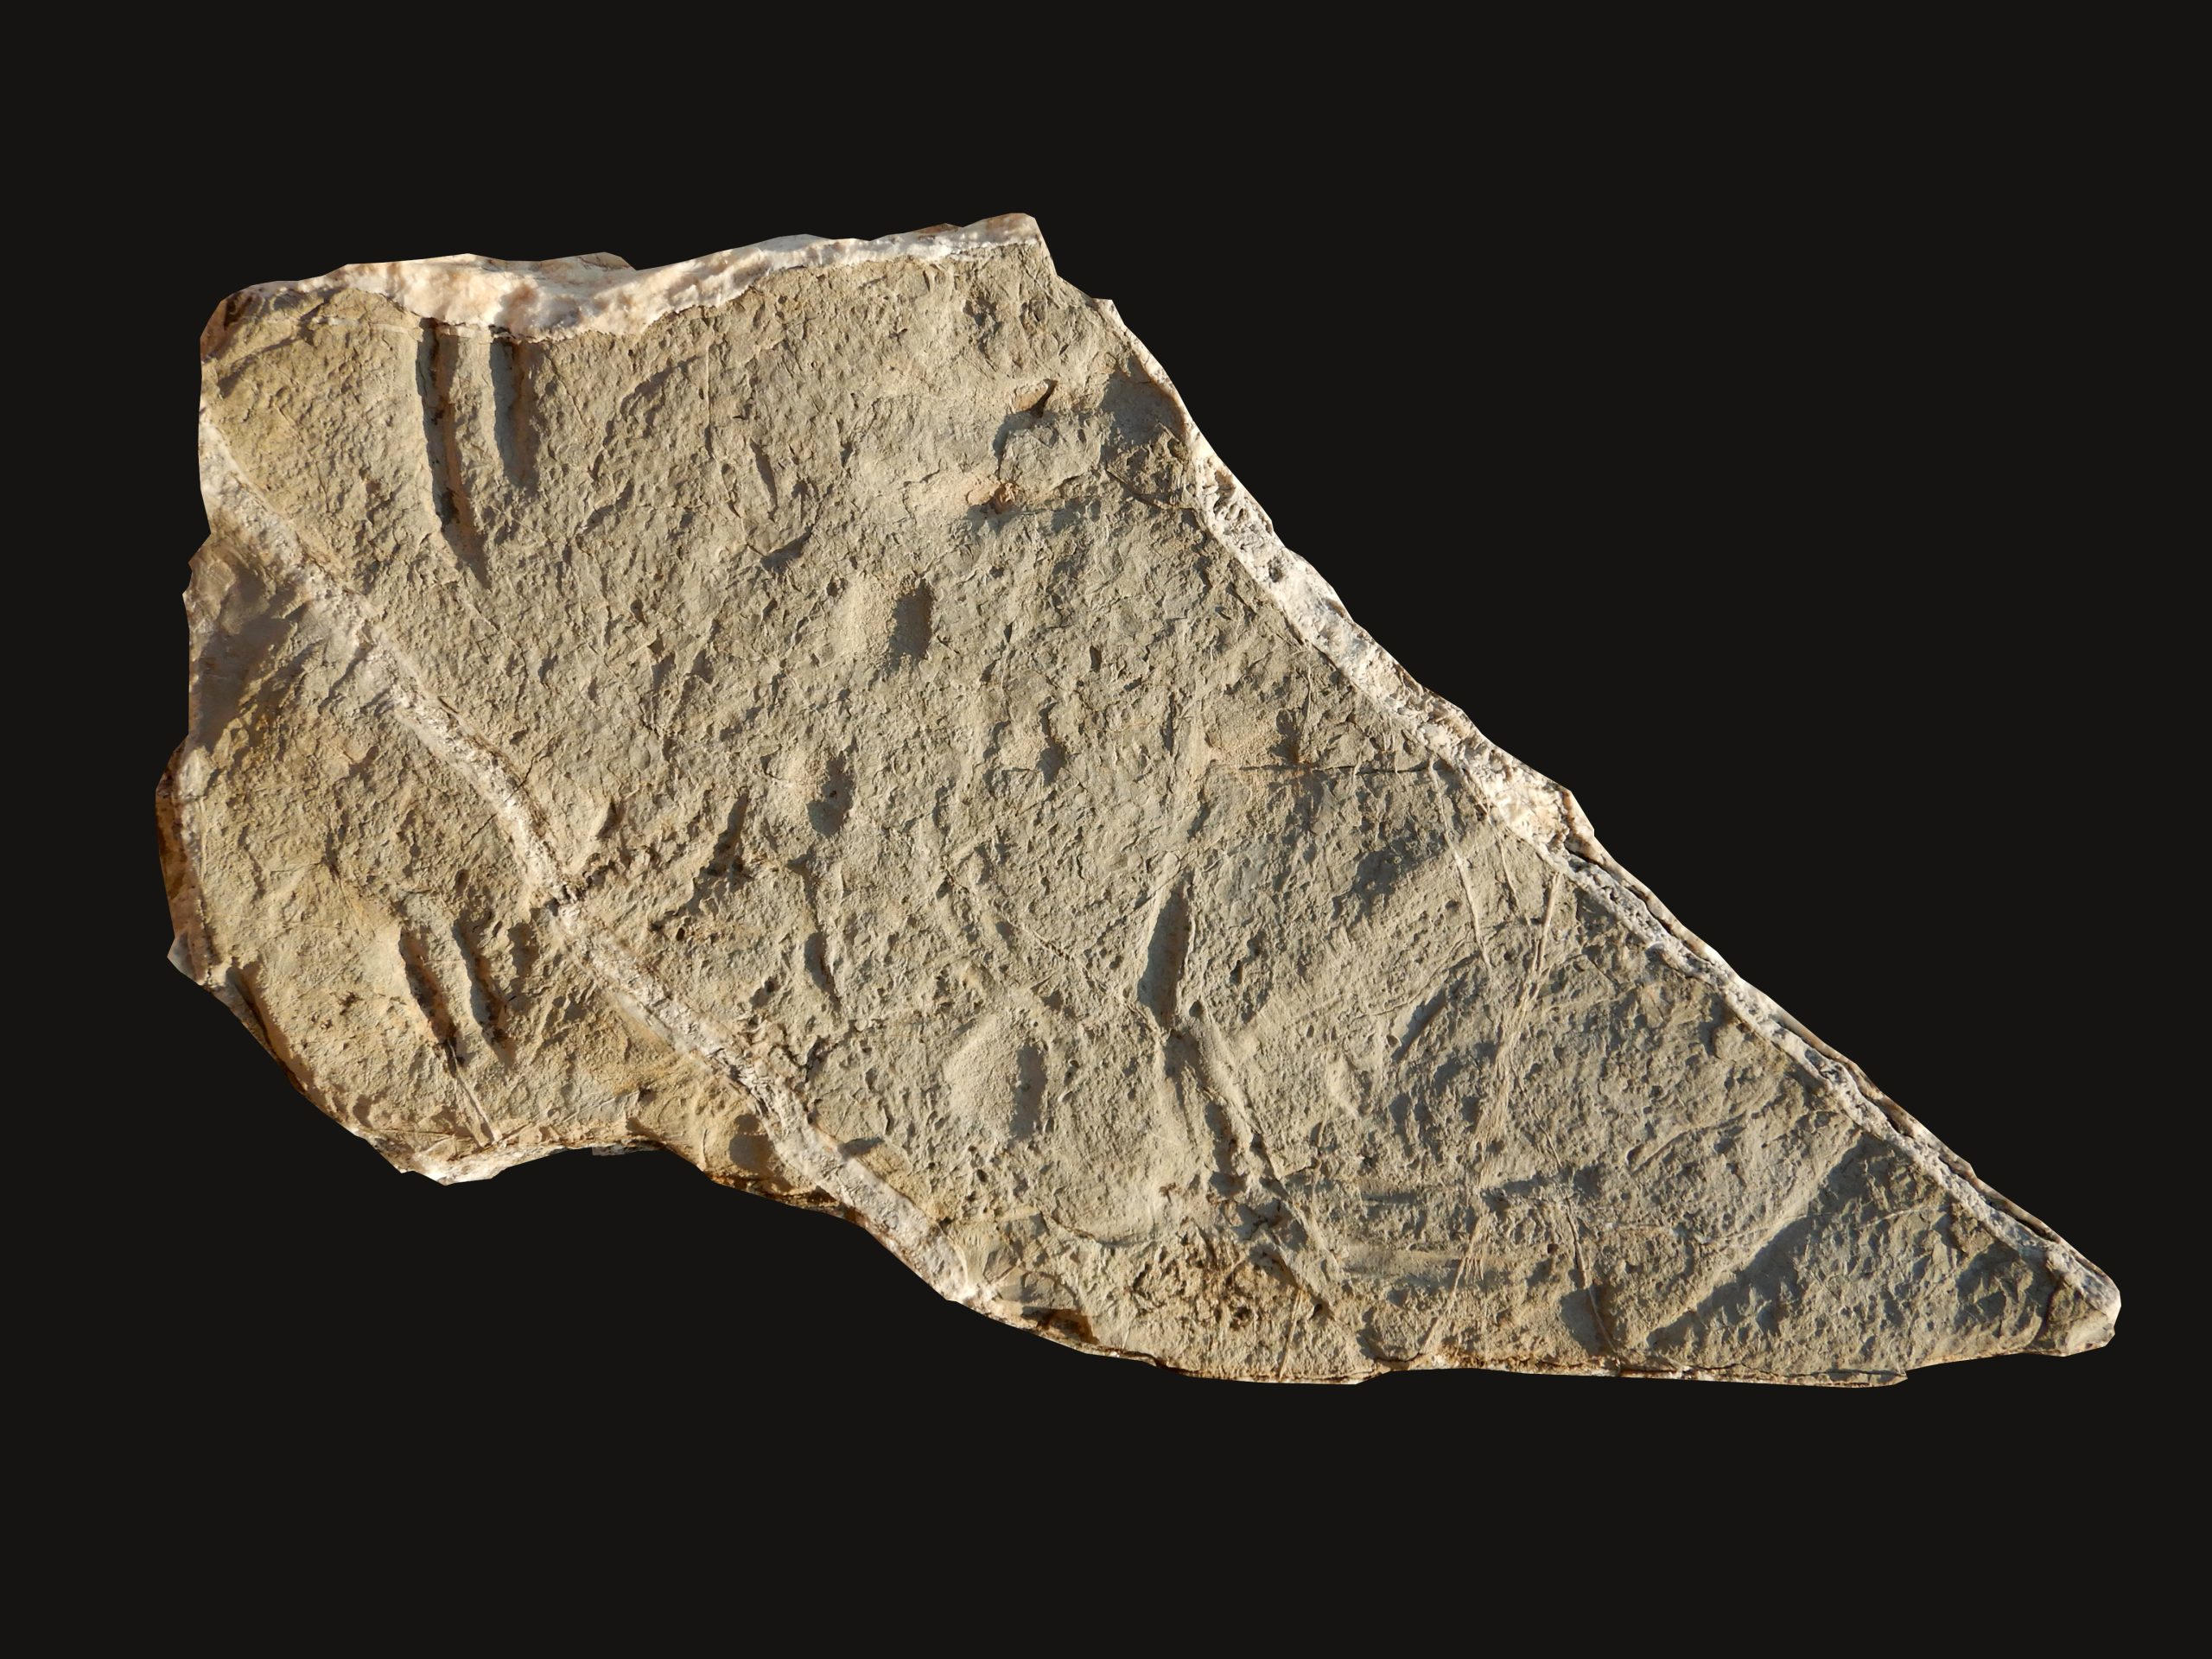 “Gördüğüme inanamadım”: 130 milyon yıllık kayalarda evrim bulmacasının eksik parçasını keşfettik